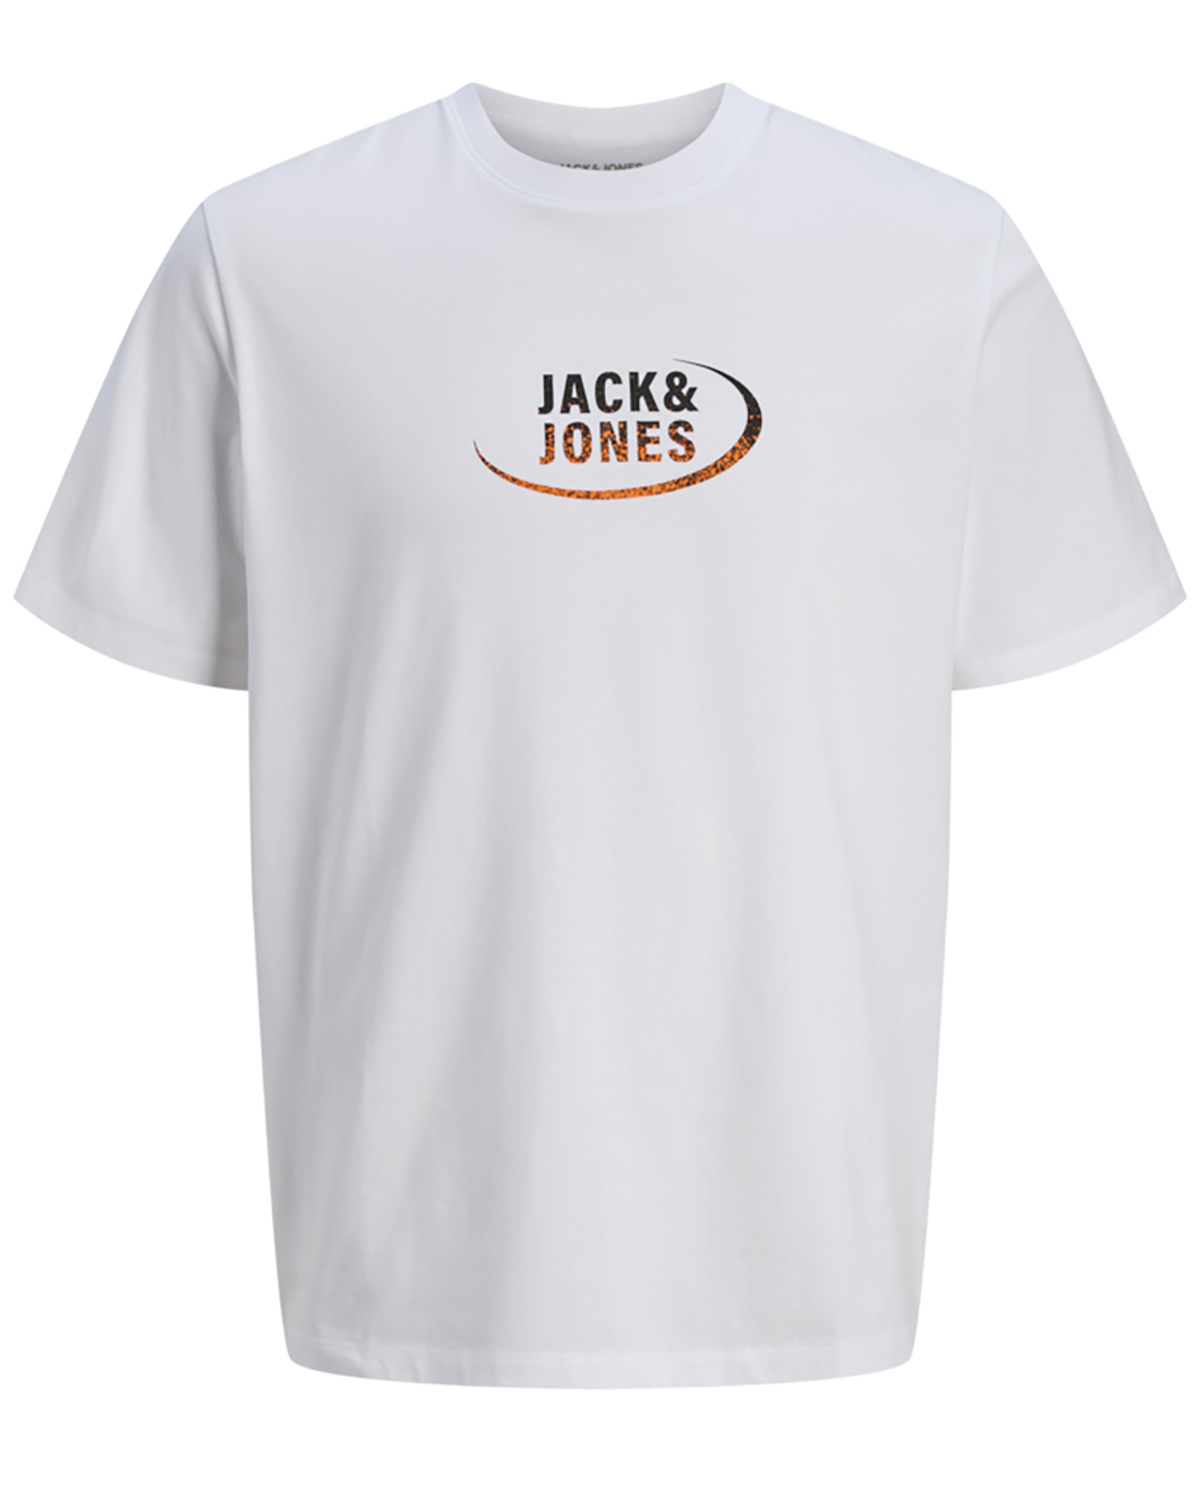 Billede af Jack & Jones t-shirt s/s, Gradient tee, hvid - 176,S+,S